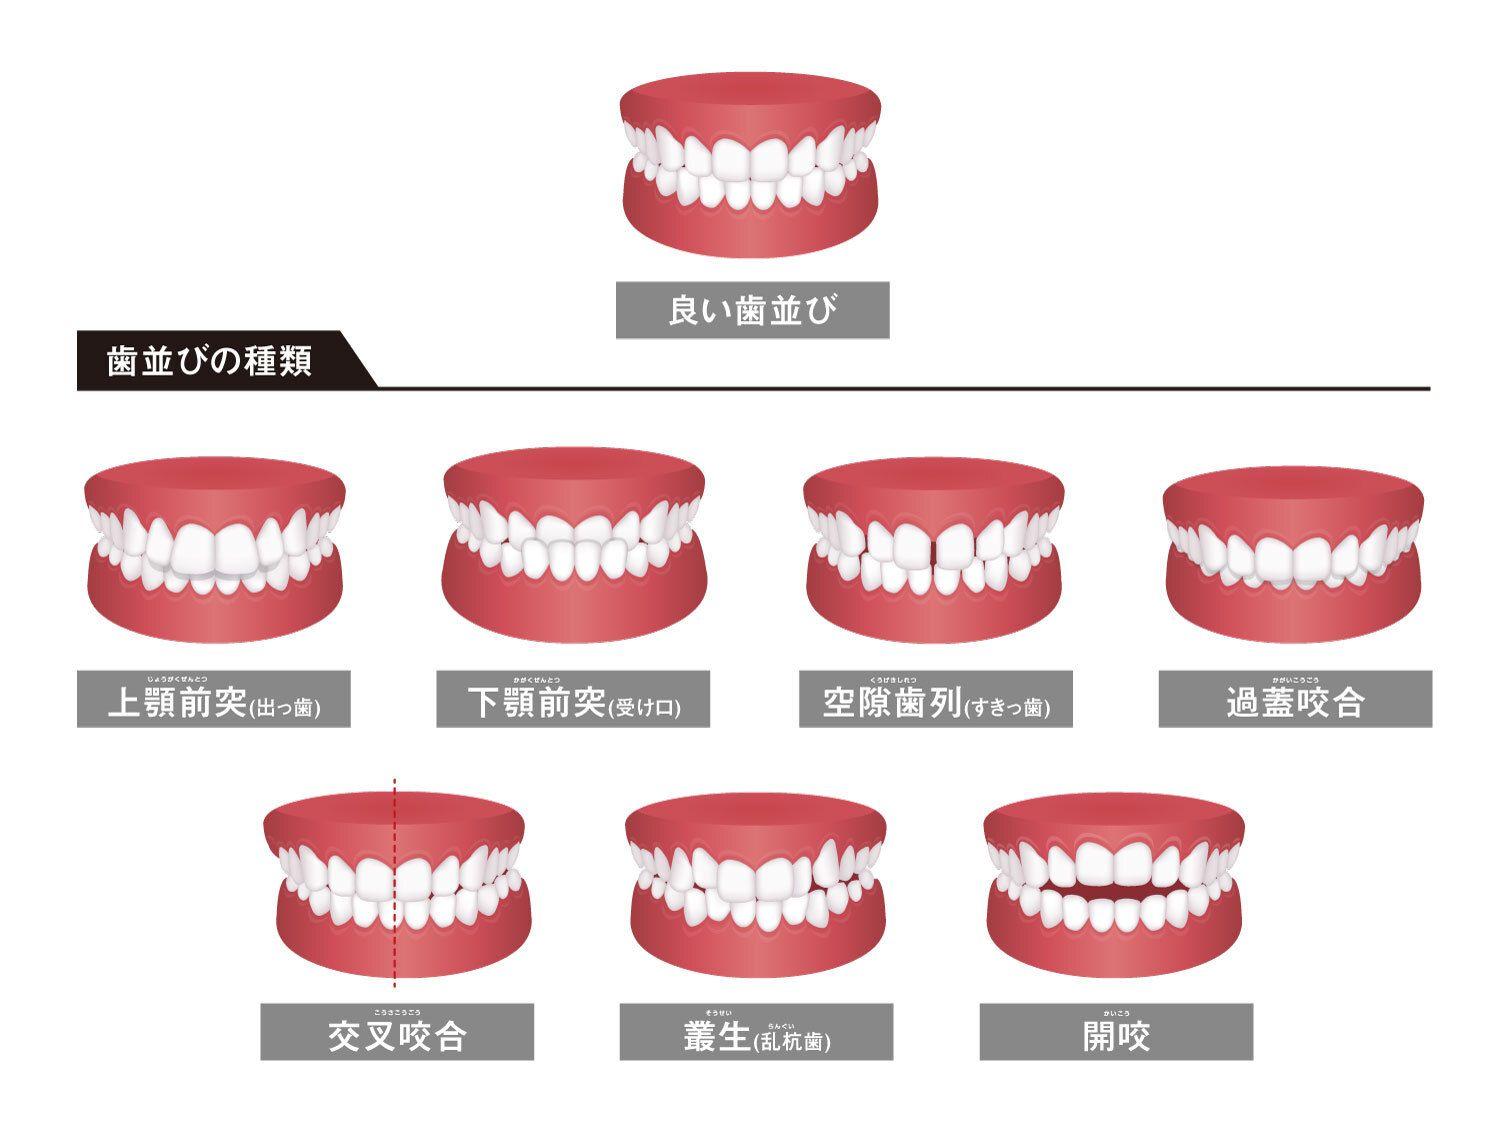 歯並びが良い・悪いを決める4つの条件